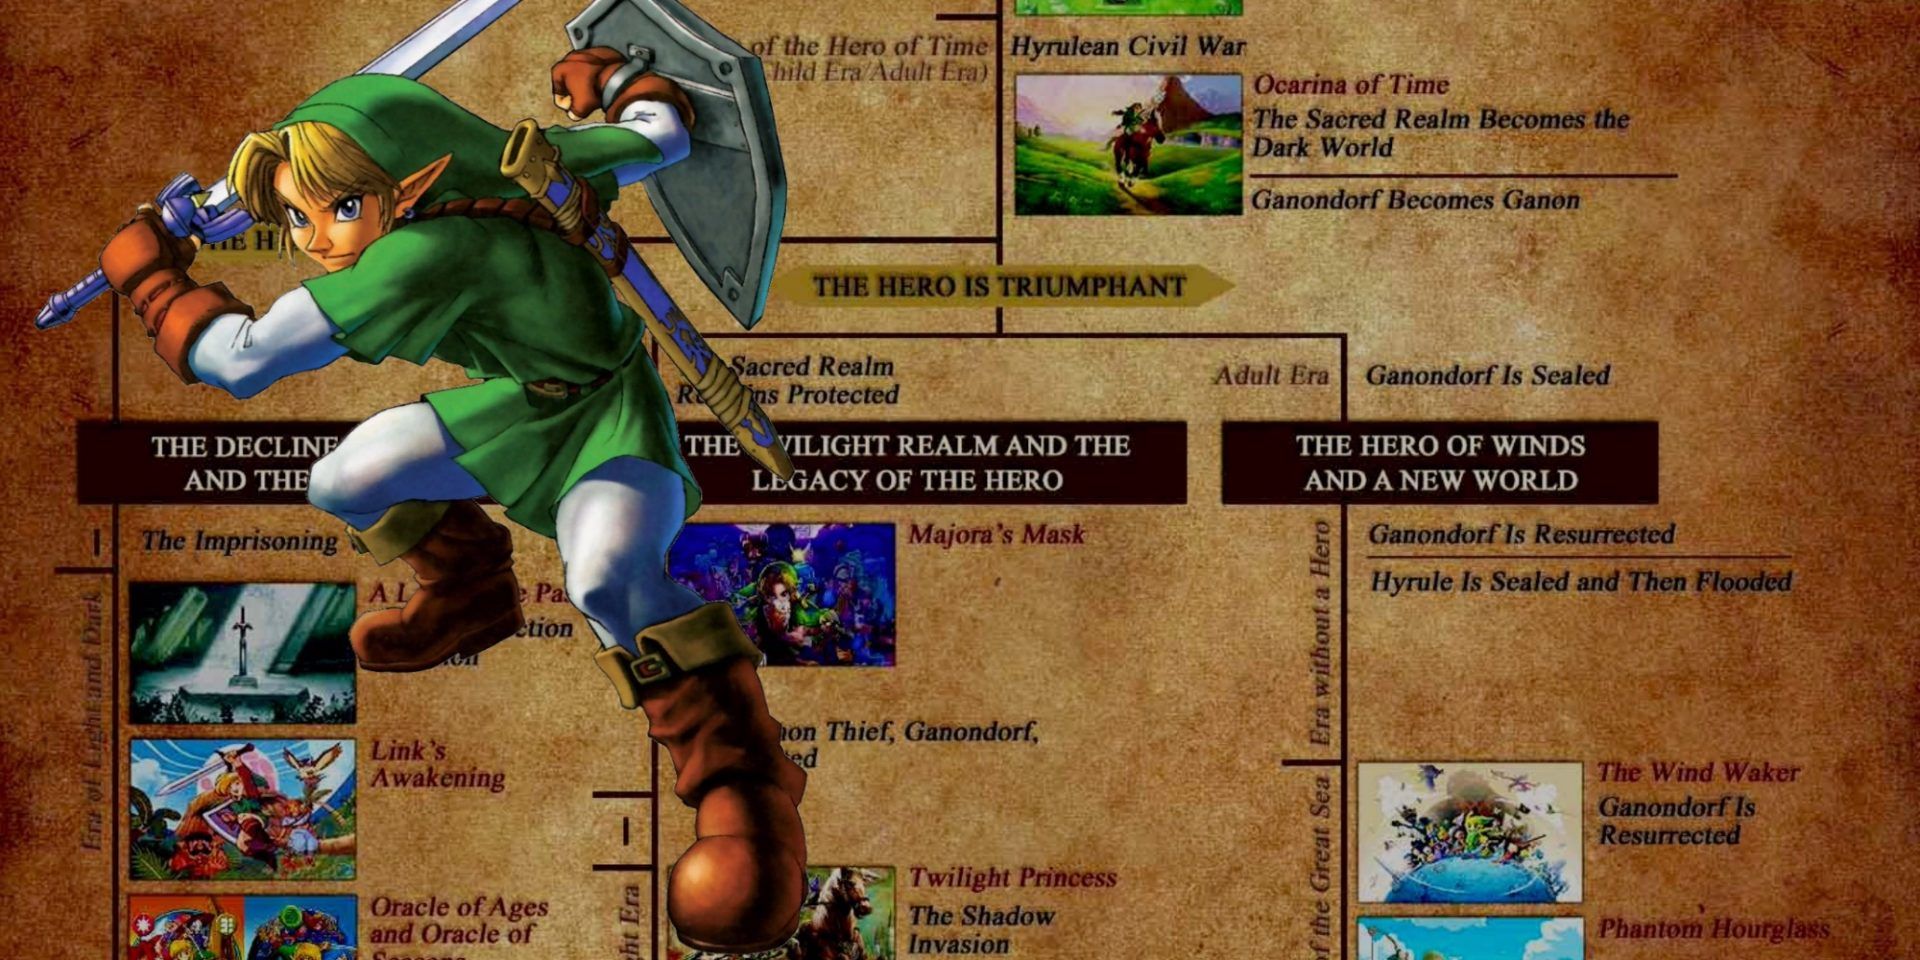 The Complete Legend of Zelda Timeline, Explained